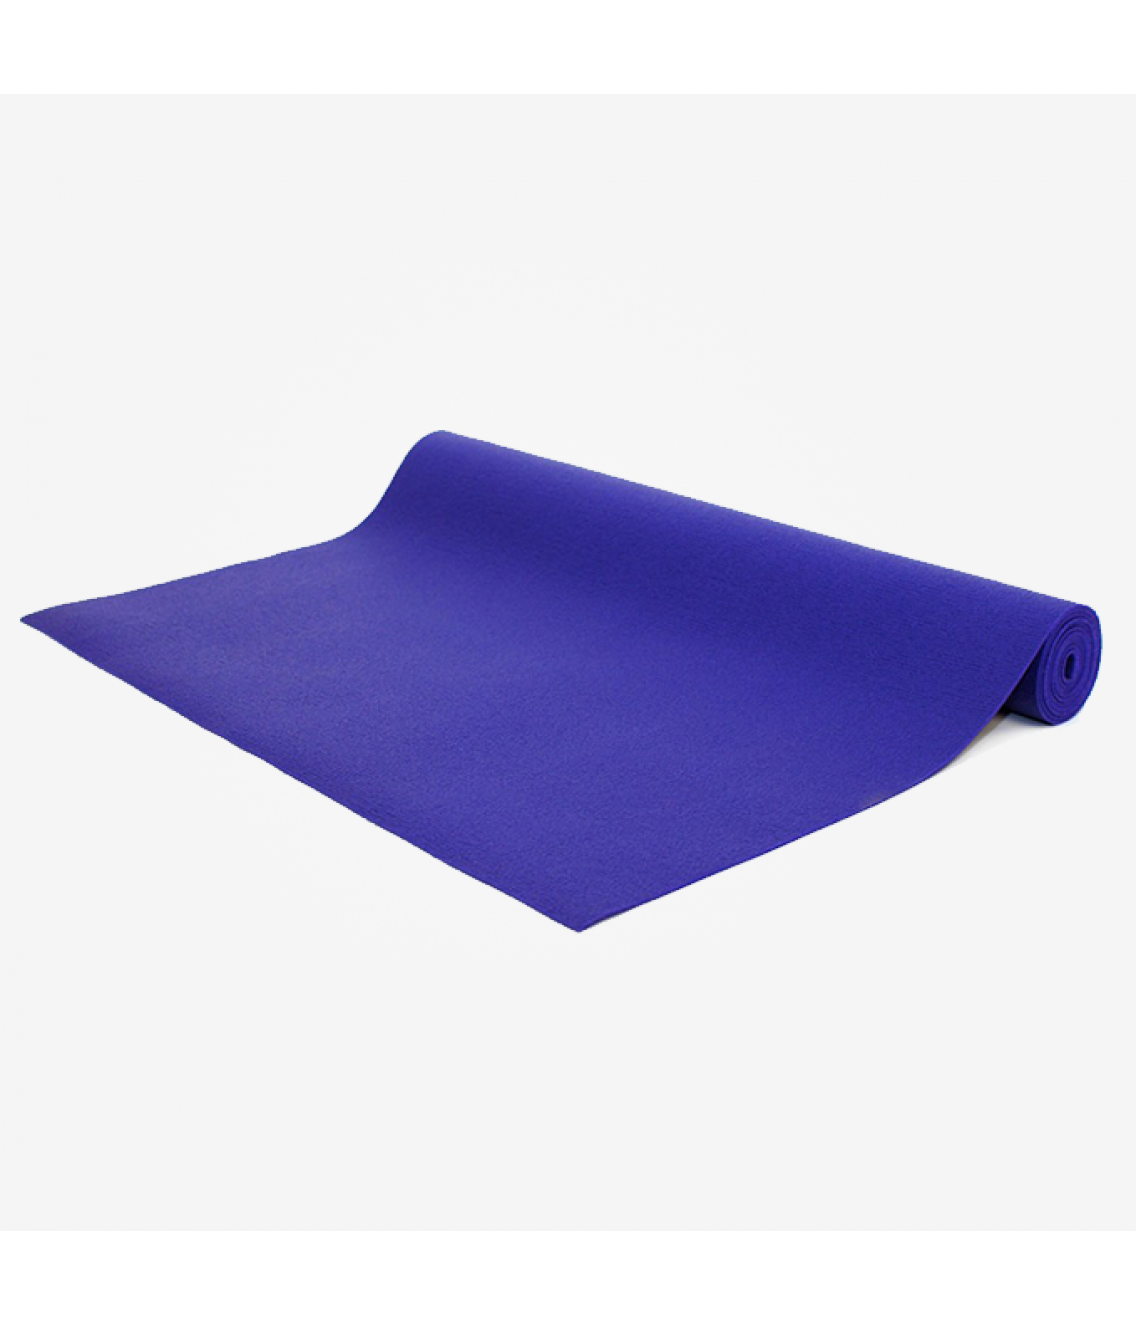 Коврик для йоги Bodhi Kailash 220см 60см 3мм фиолетовый